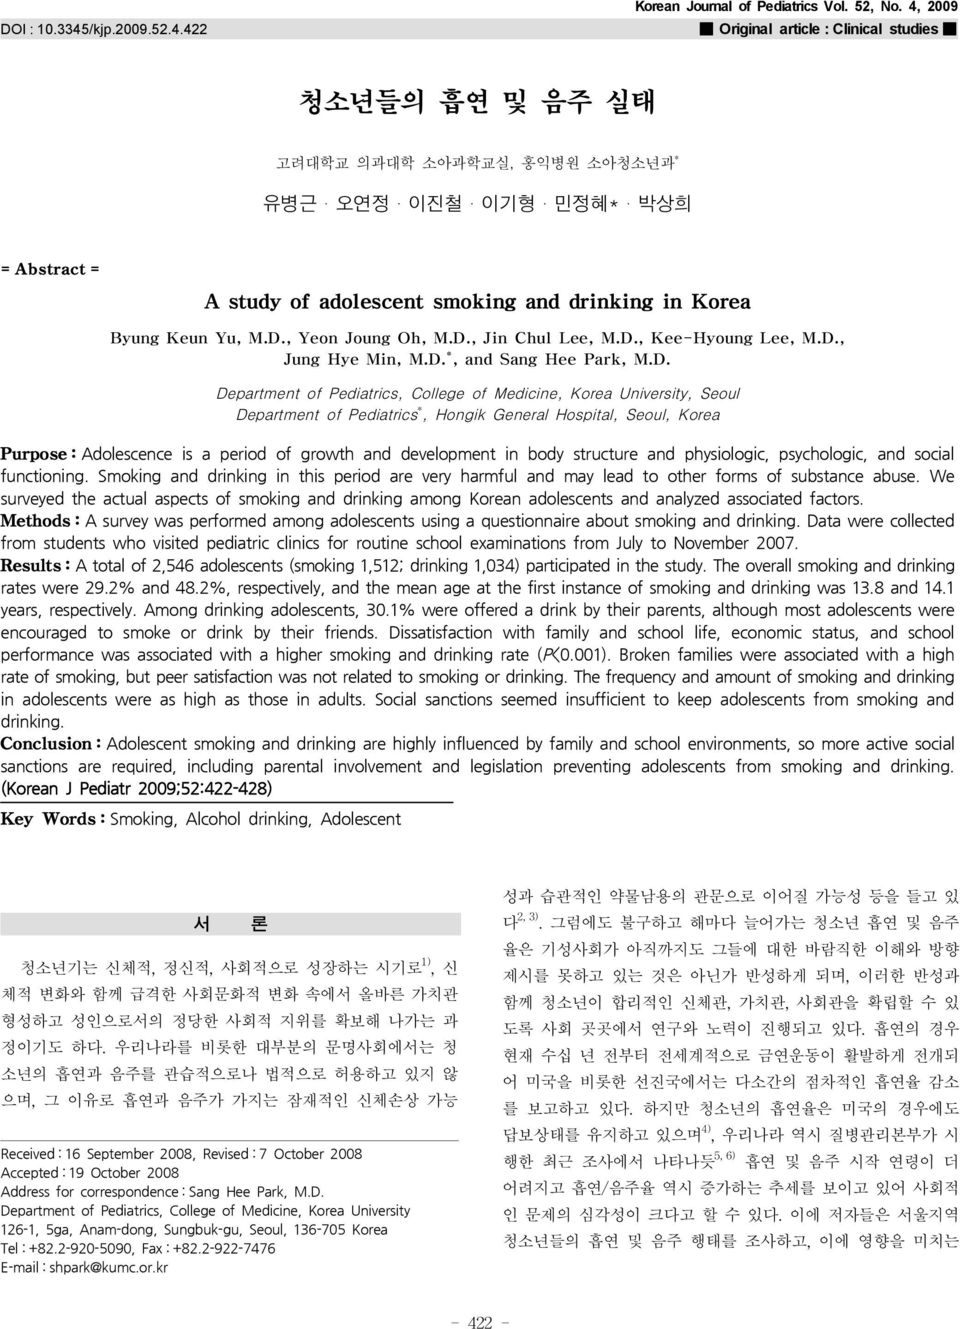 M.D., Yeon Joung Oh, M.D., Jin Chul Lee, M.D., Kee-Hyoung Lee, M.D., Jung Hye Min, M.D. *, and Sang Hee Park, M.D. Department of Pediatrics, College of Medicine, Korea University, Seoul Department of